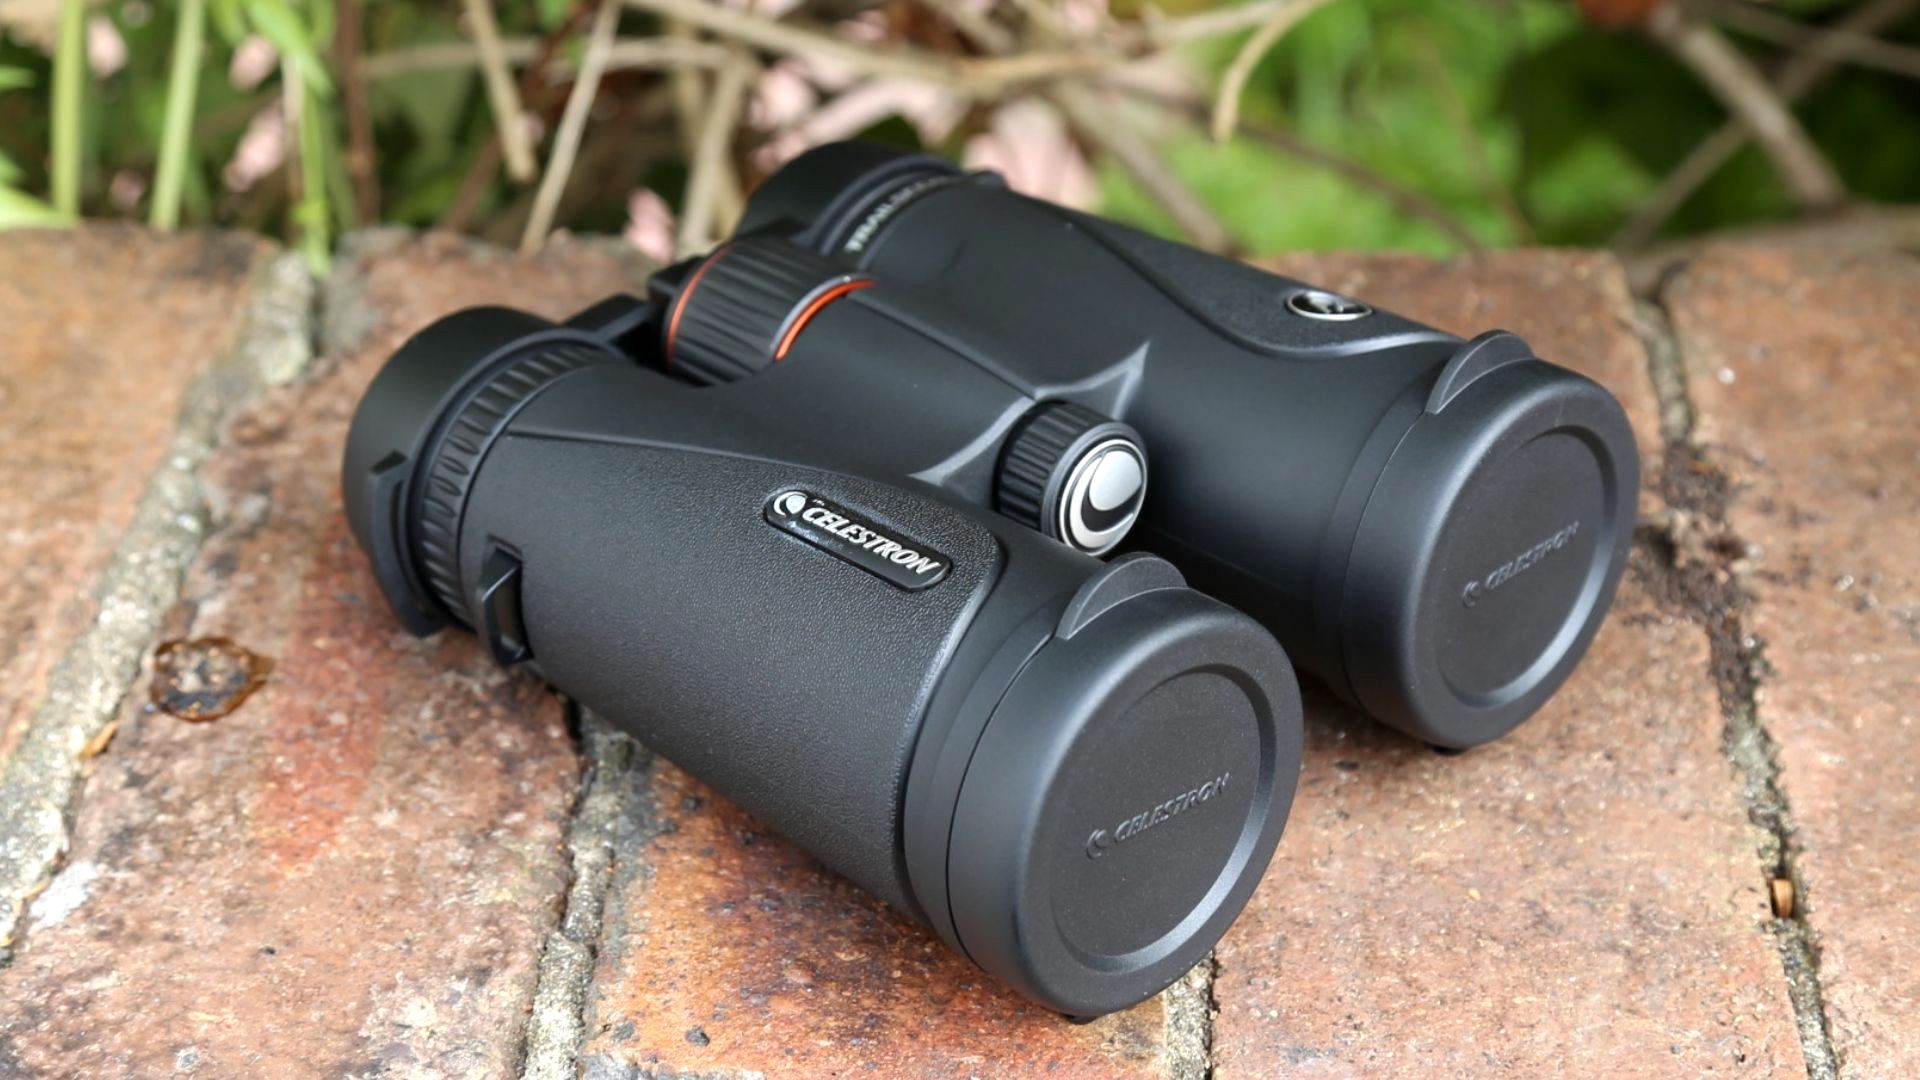 Celestron TrailSeeker 8x42 binocular review: image shows Celestron TrailSeeker 8x42 binoculars